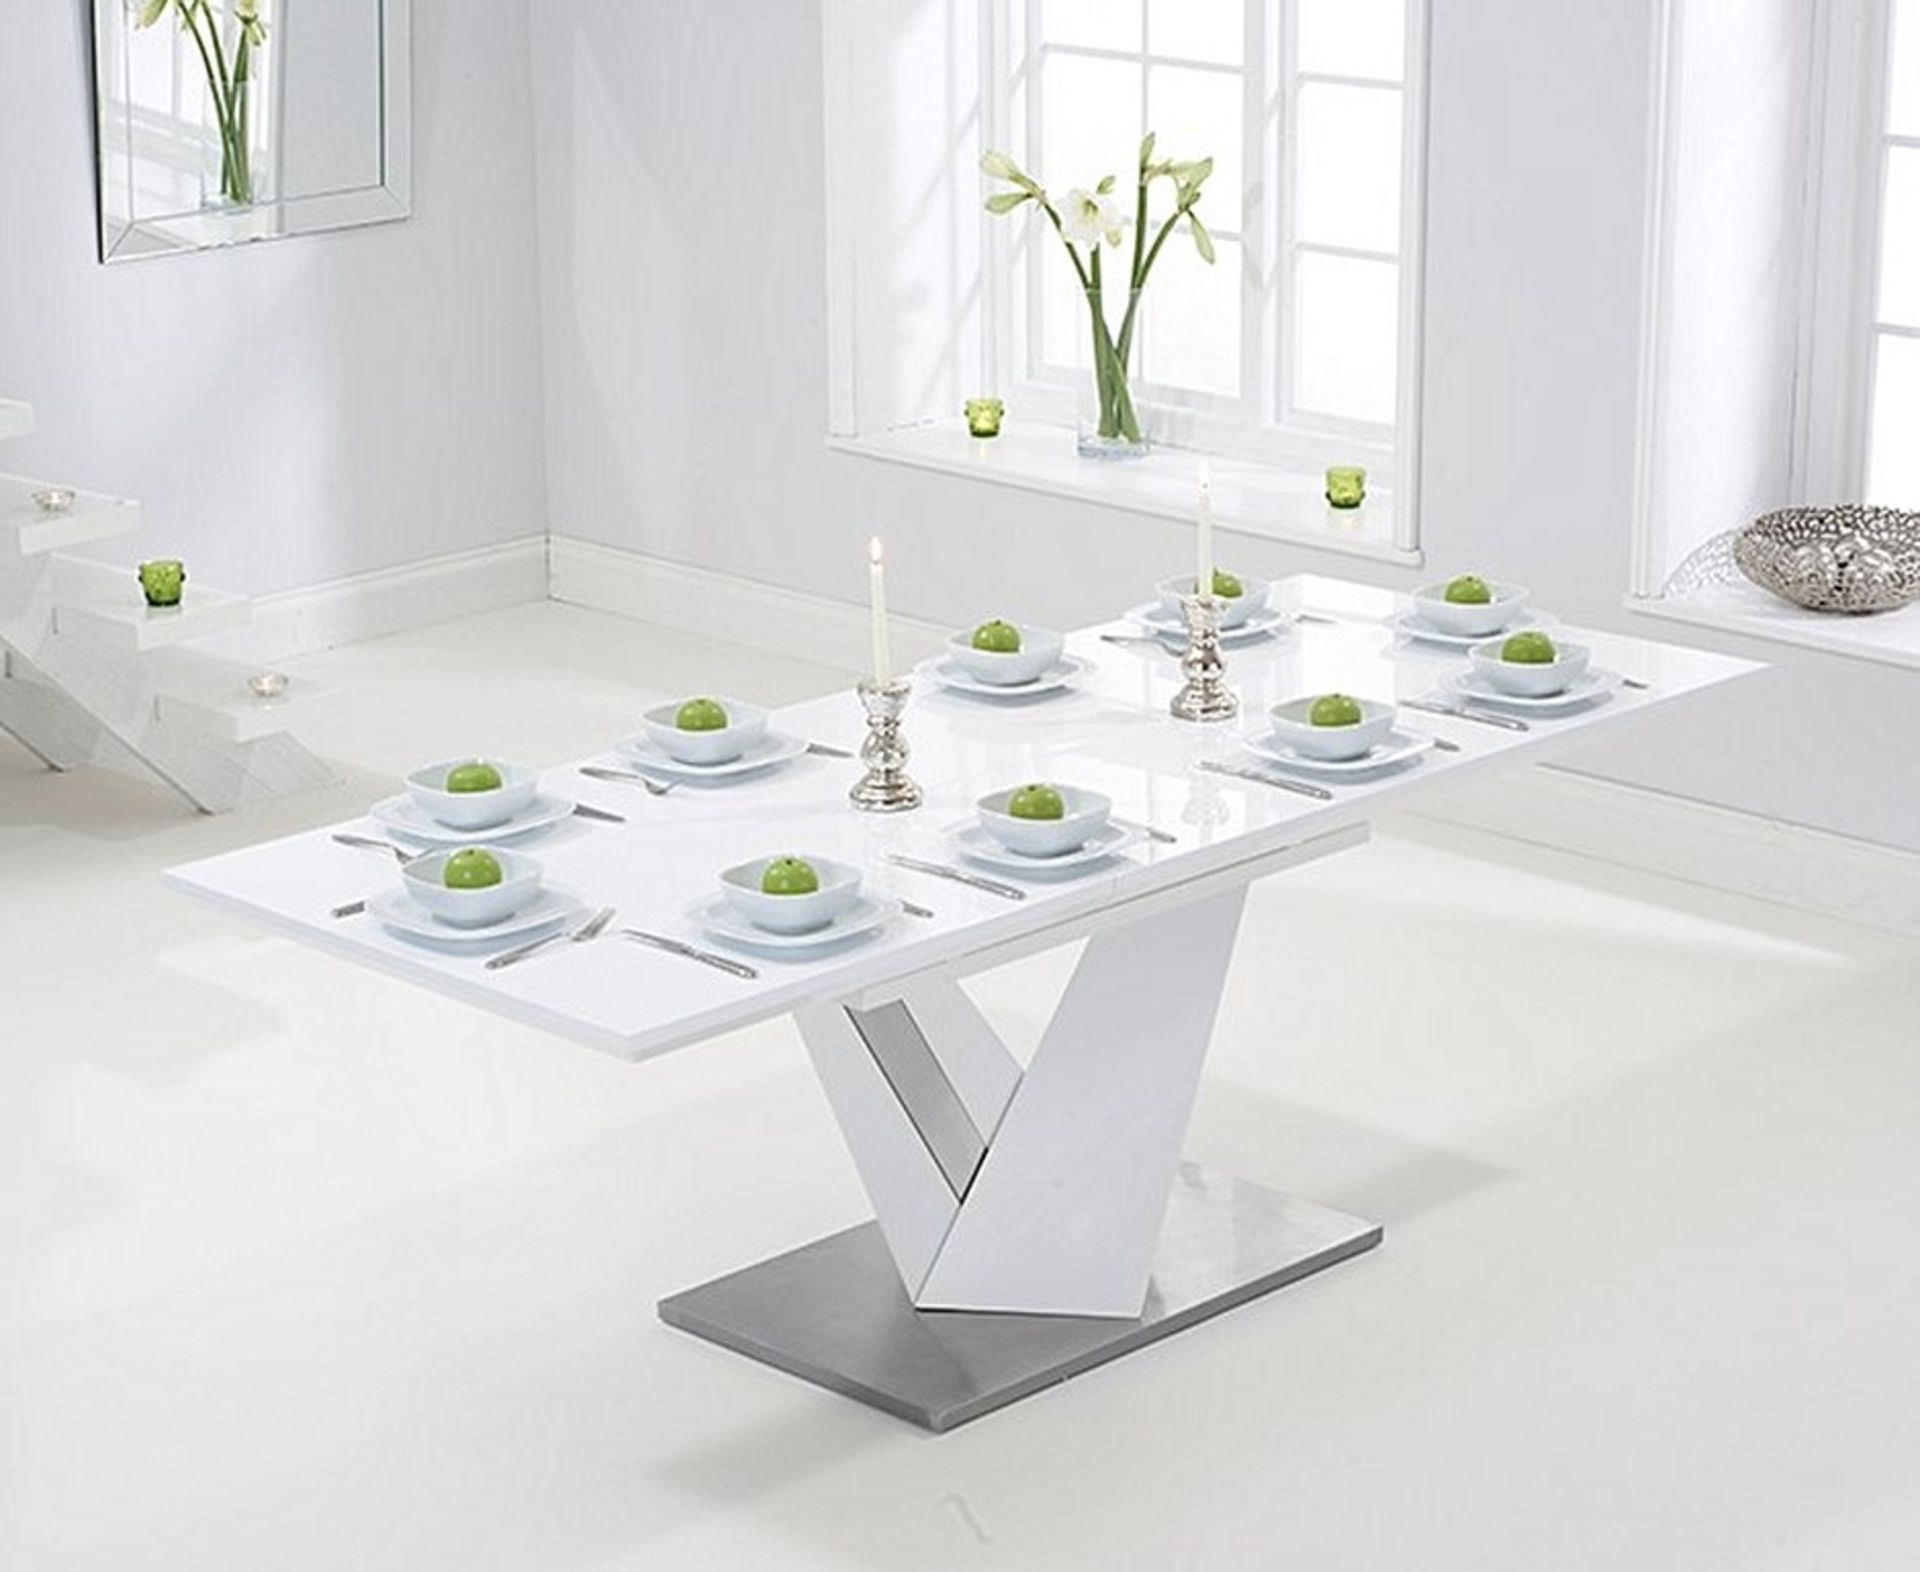 Harmony 160cm Extending White High Gloss Dining Table The Harmony collection of extending tables